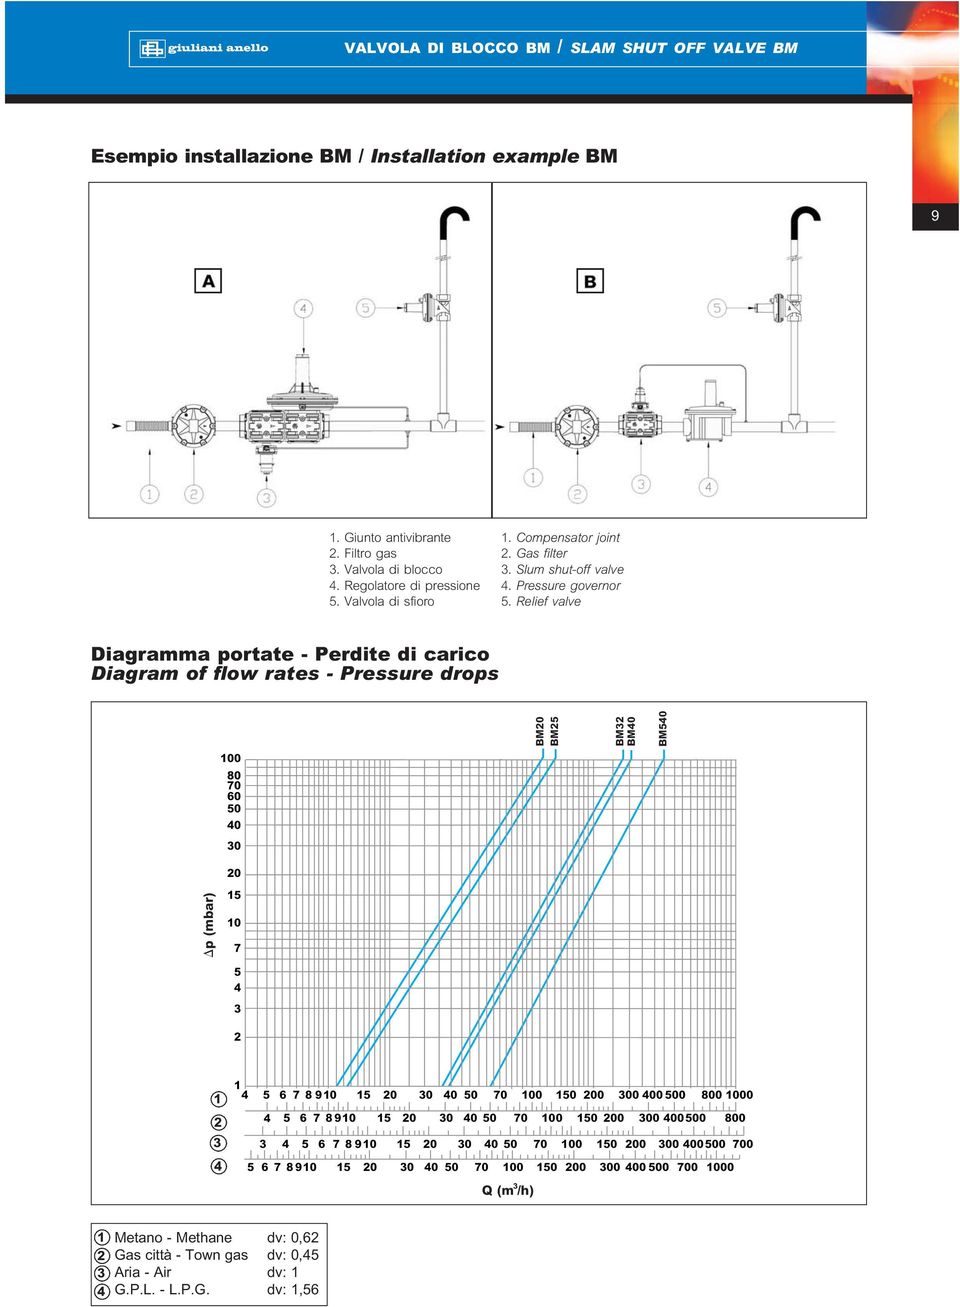 Relief valve Diagramma portate - Perdite di carico Diagram of flow rates - Pressure drops 100 80 70 60 50 0 0 BM0 BM5 BM BM0 BM50 0 p (mbar) 15 10 7 5 1 1 5 6 7 8 910 15 0 0 0 50 70 100